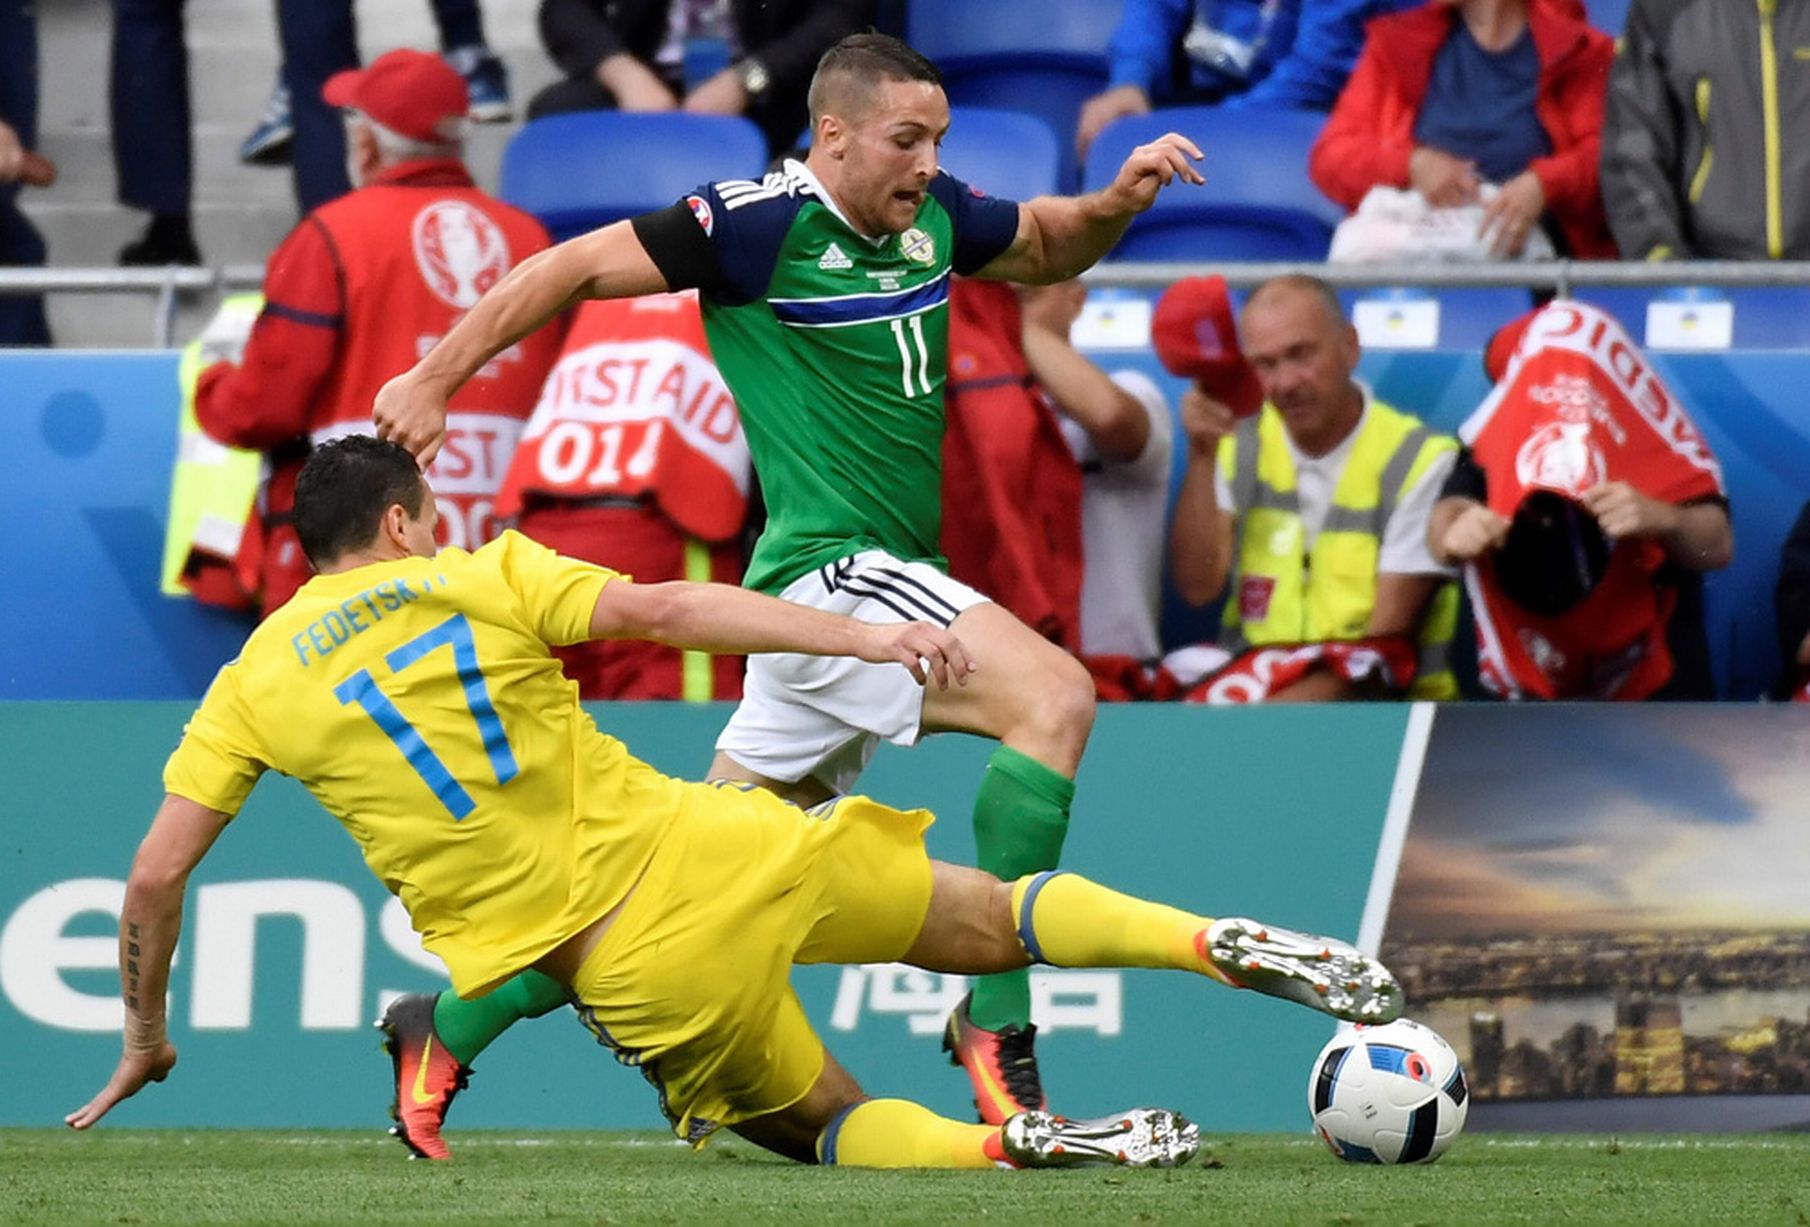 Ukraine vs Bắc Ireland – Nhận định kèo bóng đá 01h00 04/06/2021 – Giao hữu quốc tế